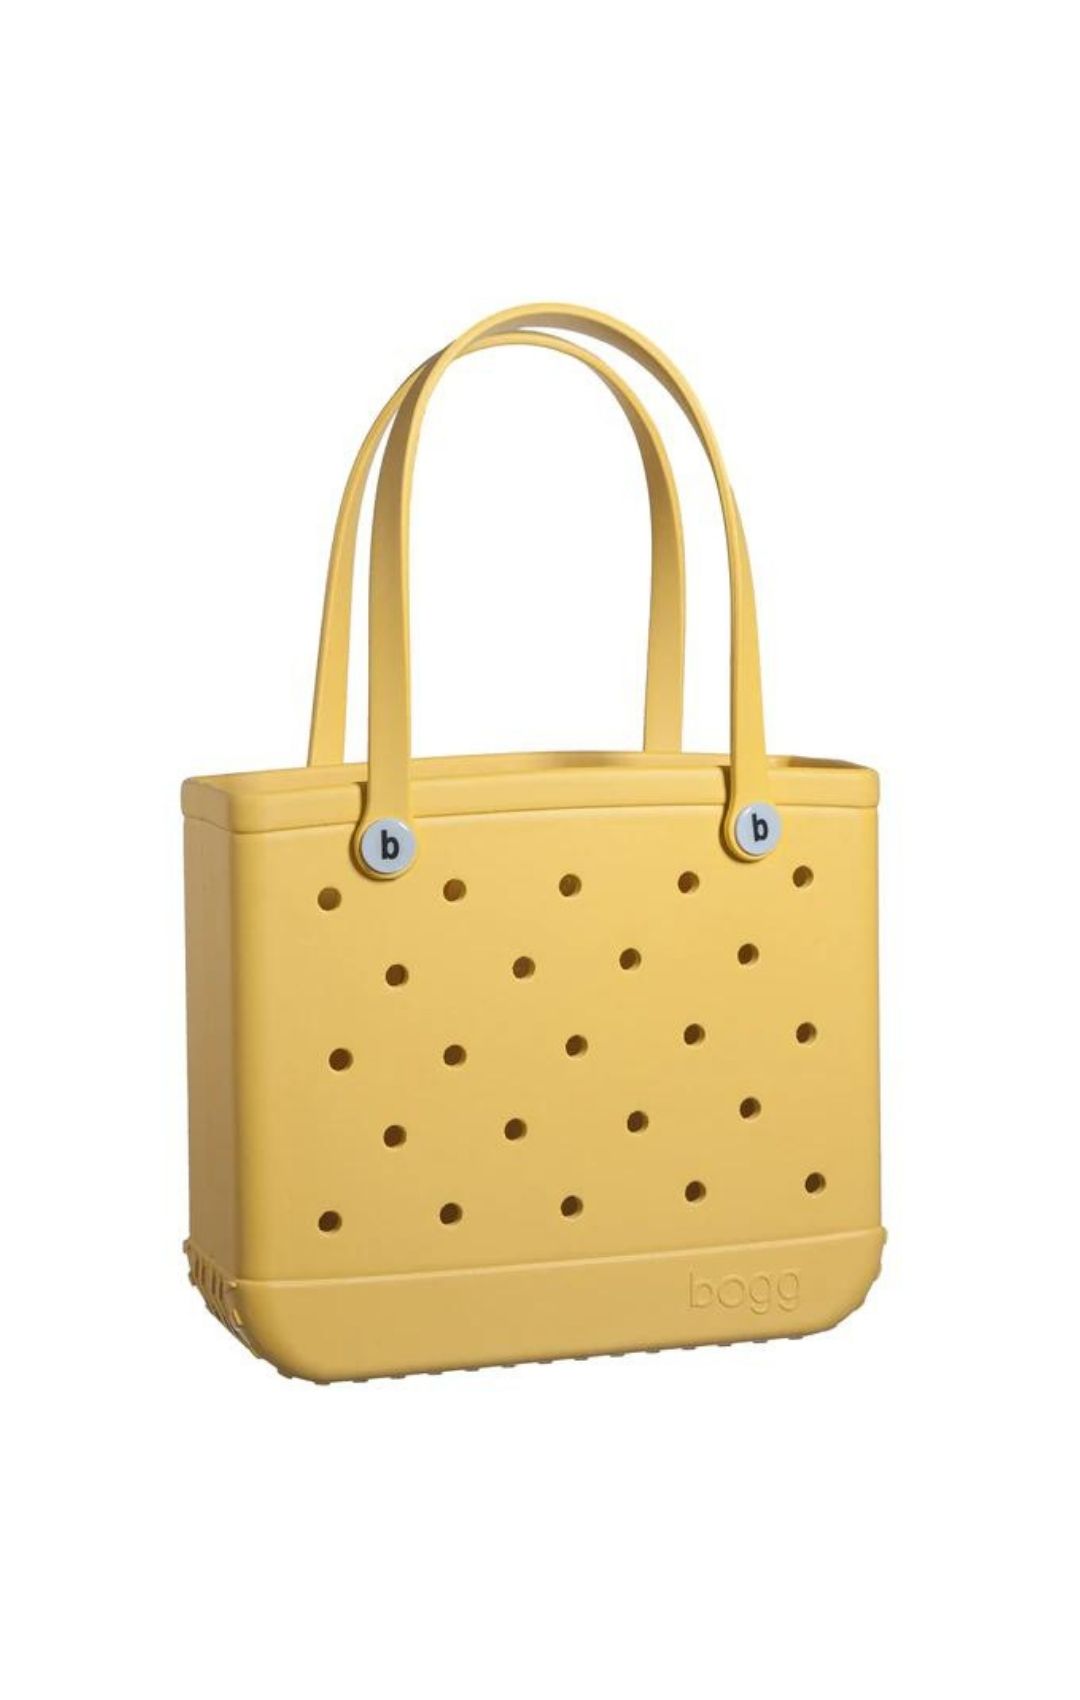 Yellow Baby Bogg Bag